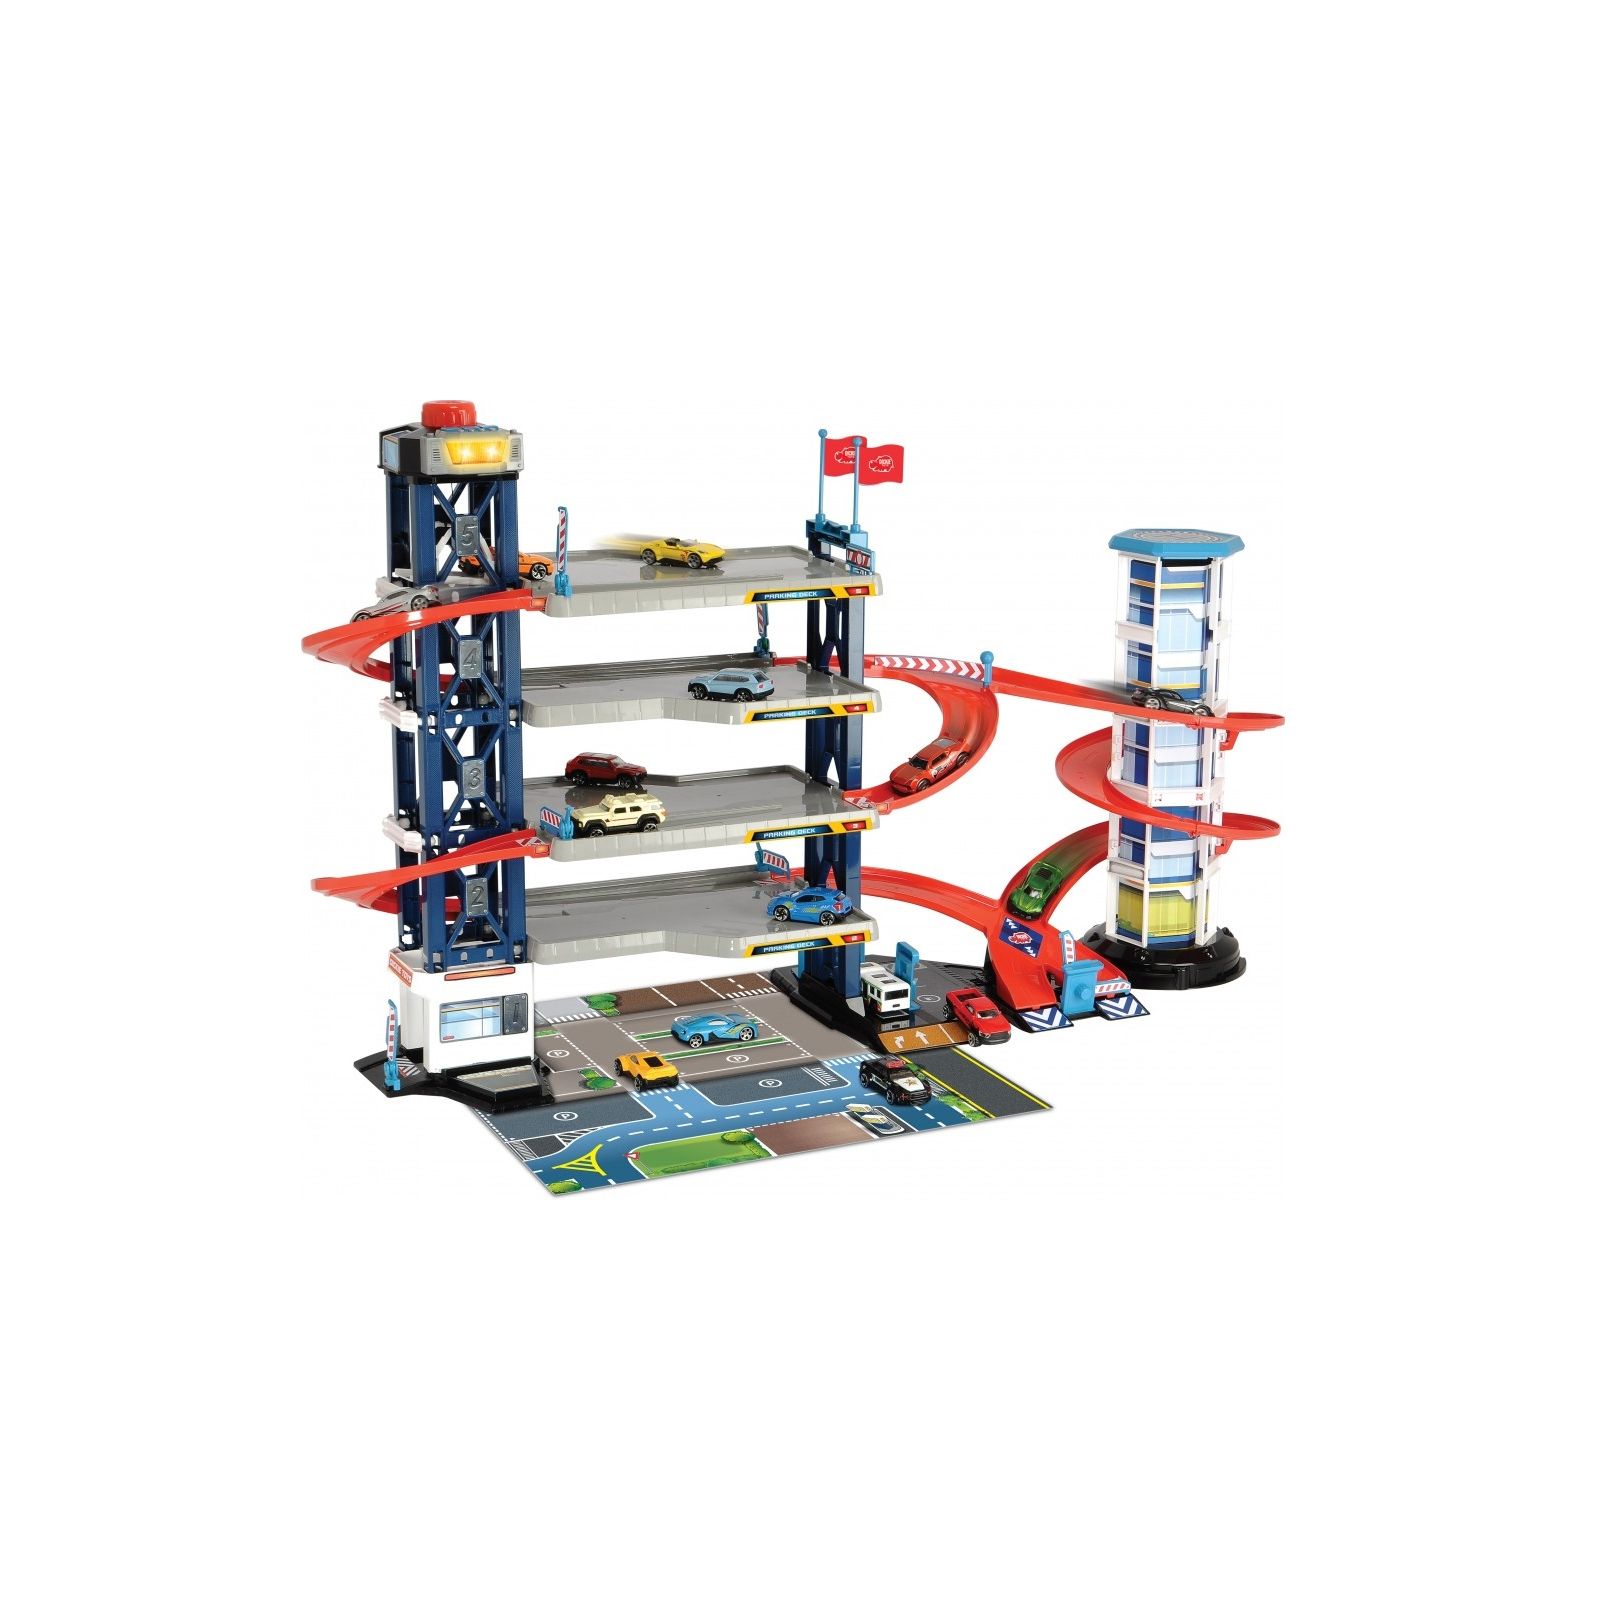 Игровой набор Dickie Toys Паркинг четырехэтажный с автомобилями и вертолетом (3749008)